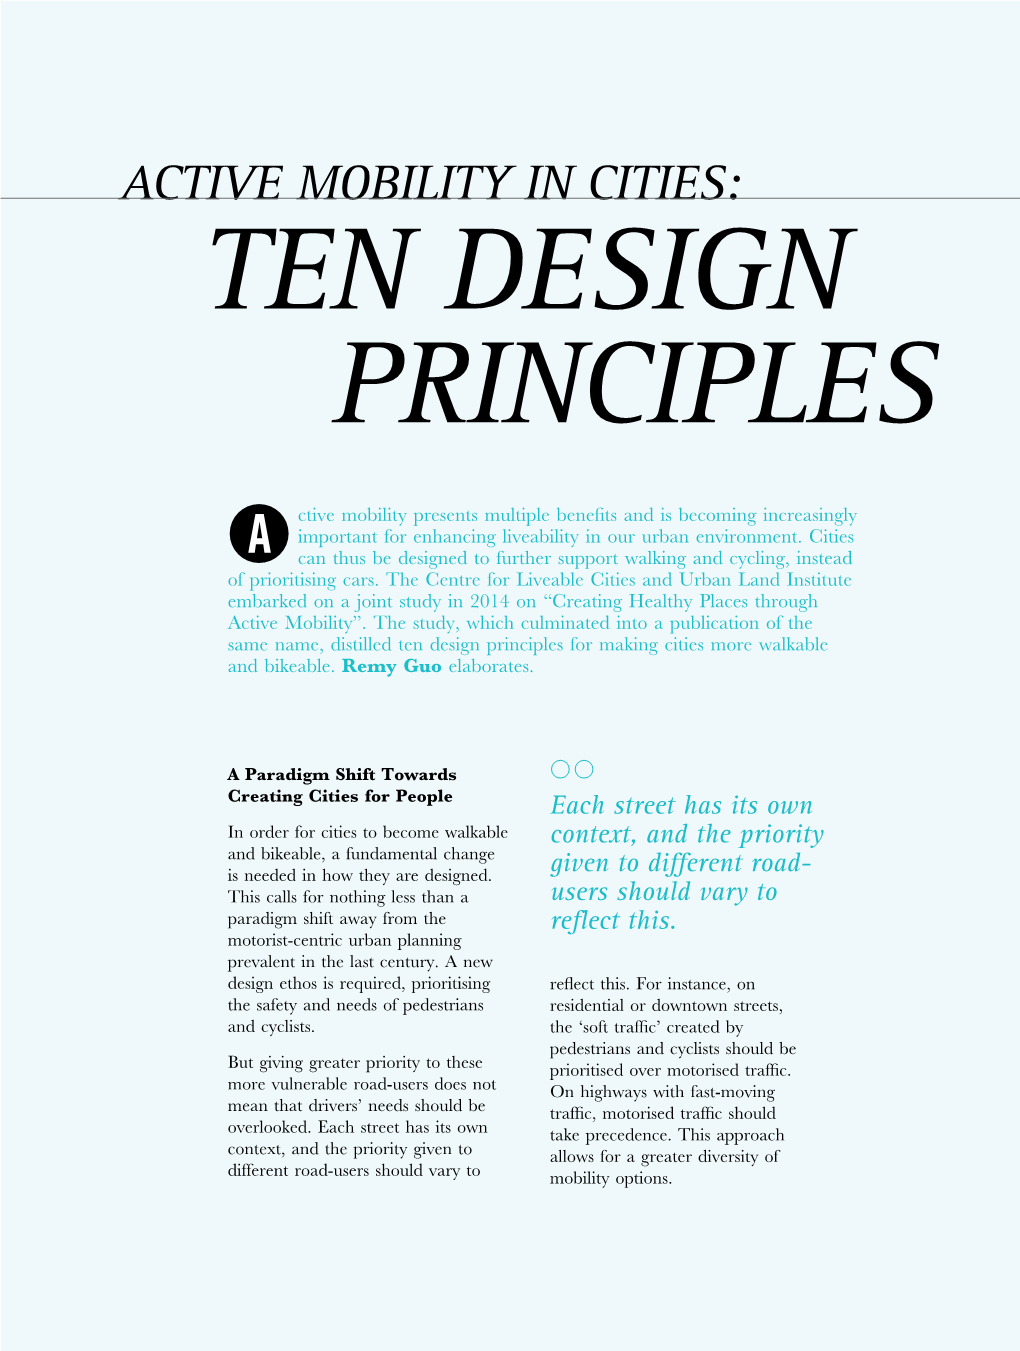 Active Mobility in Cities: Ten Design Principles